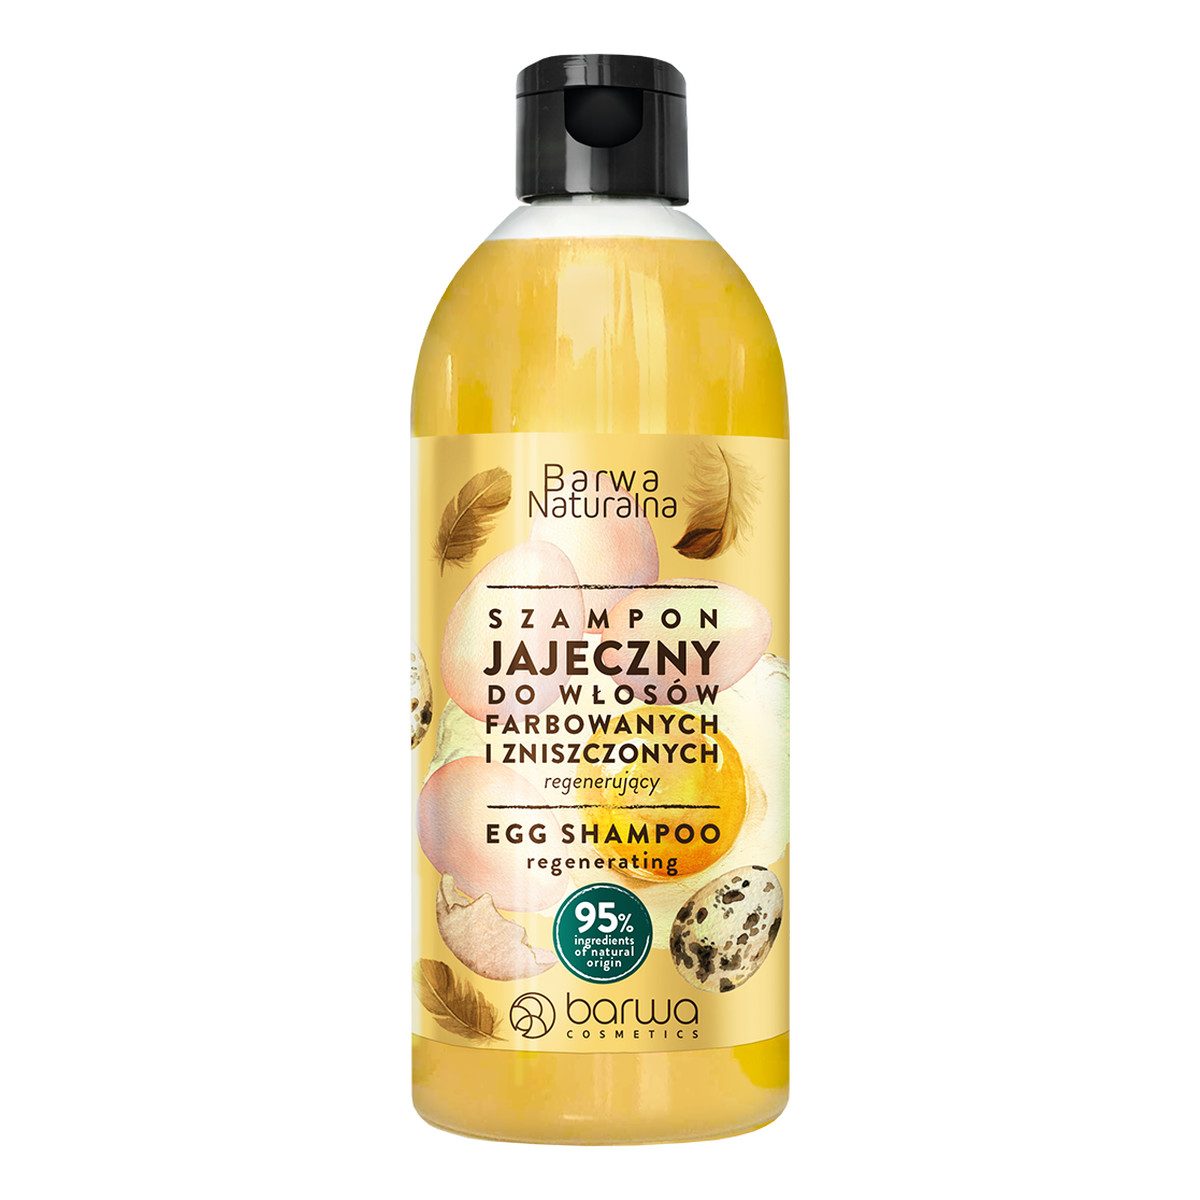 Barwa Naturalna jajeczny regenerujący szampon do włosów farbowanych i zniszczonych 500ml